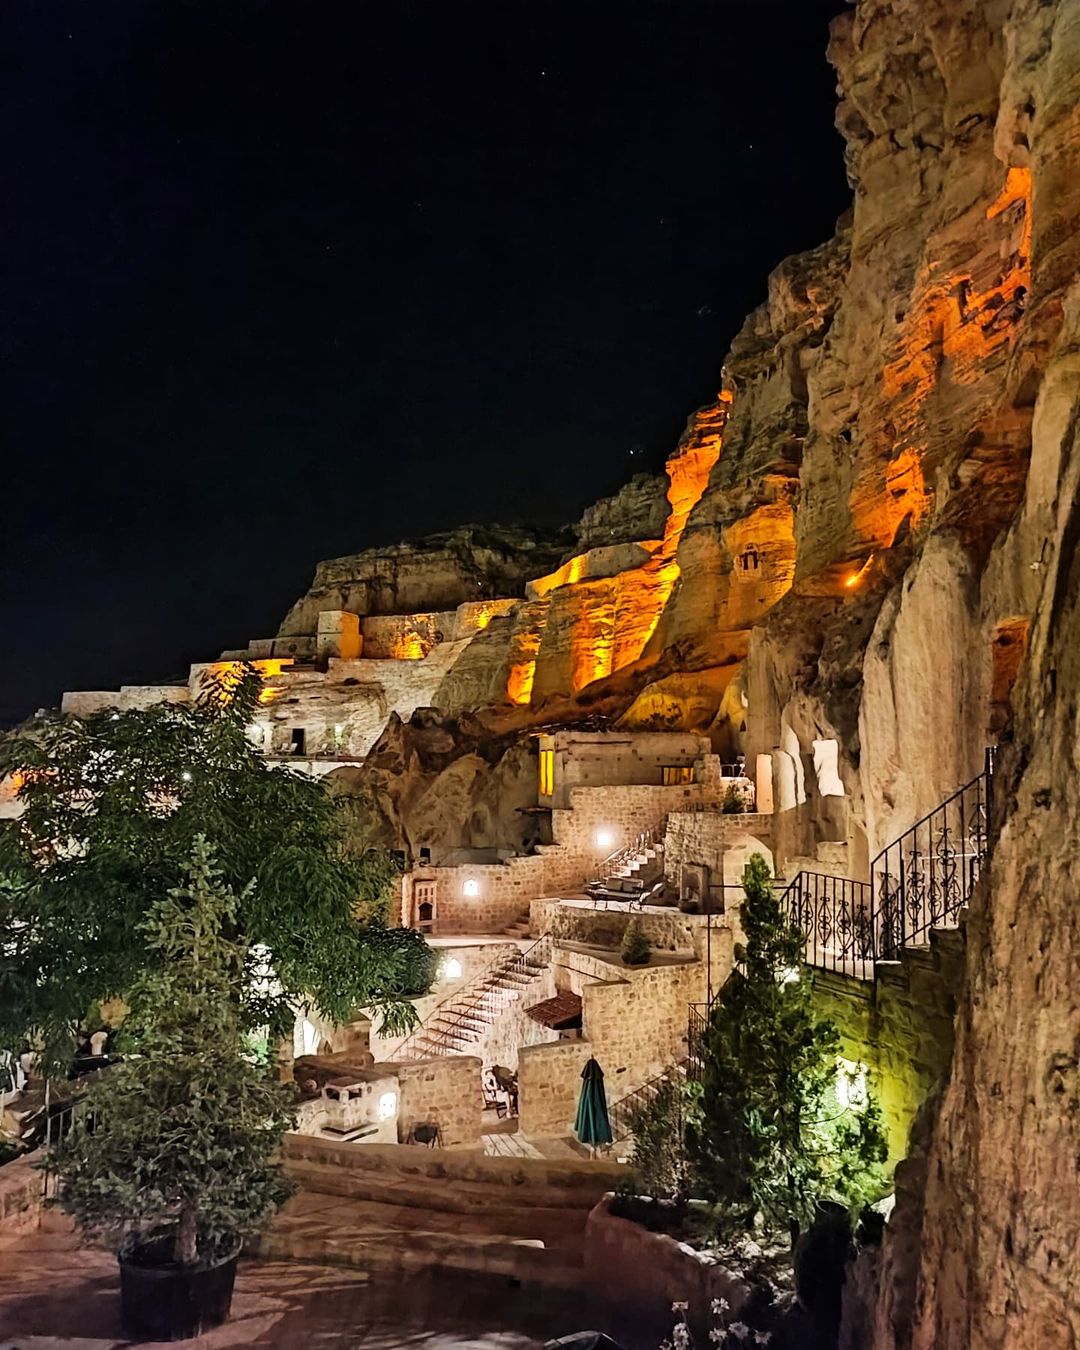 Khách sạn hang đá ở Thổ Nhĩ Kỳ 'sang chảnh' không kém resort nổi tiếng - 2